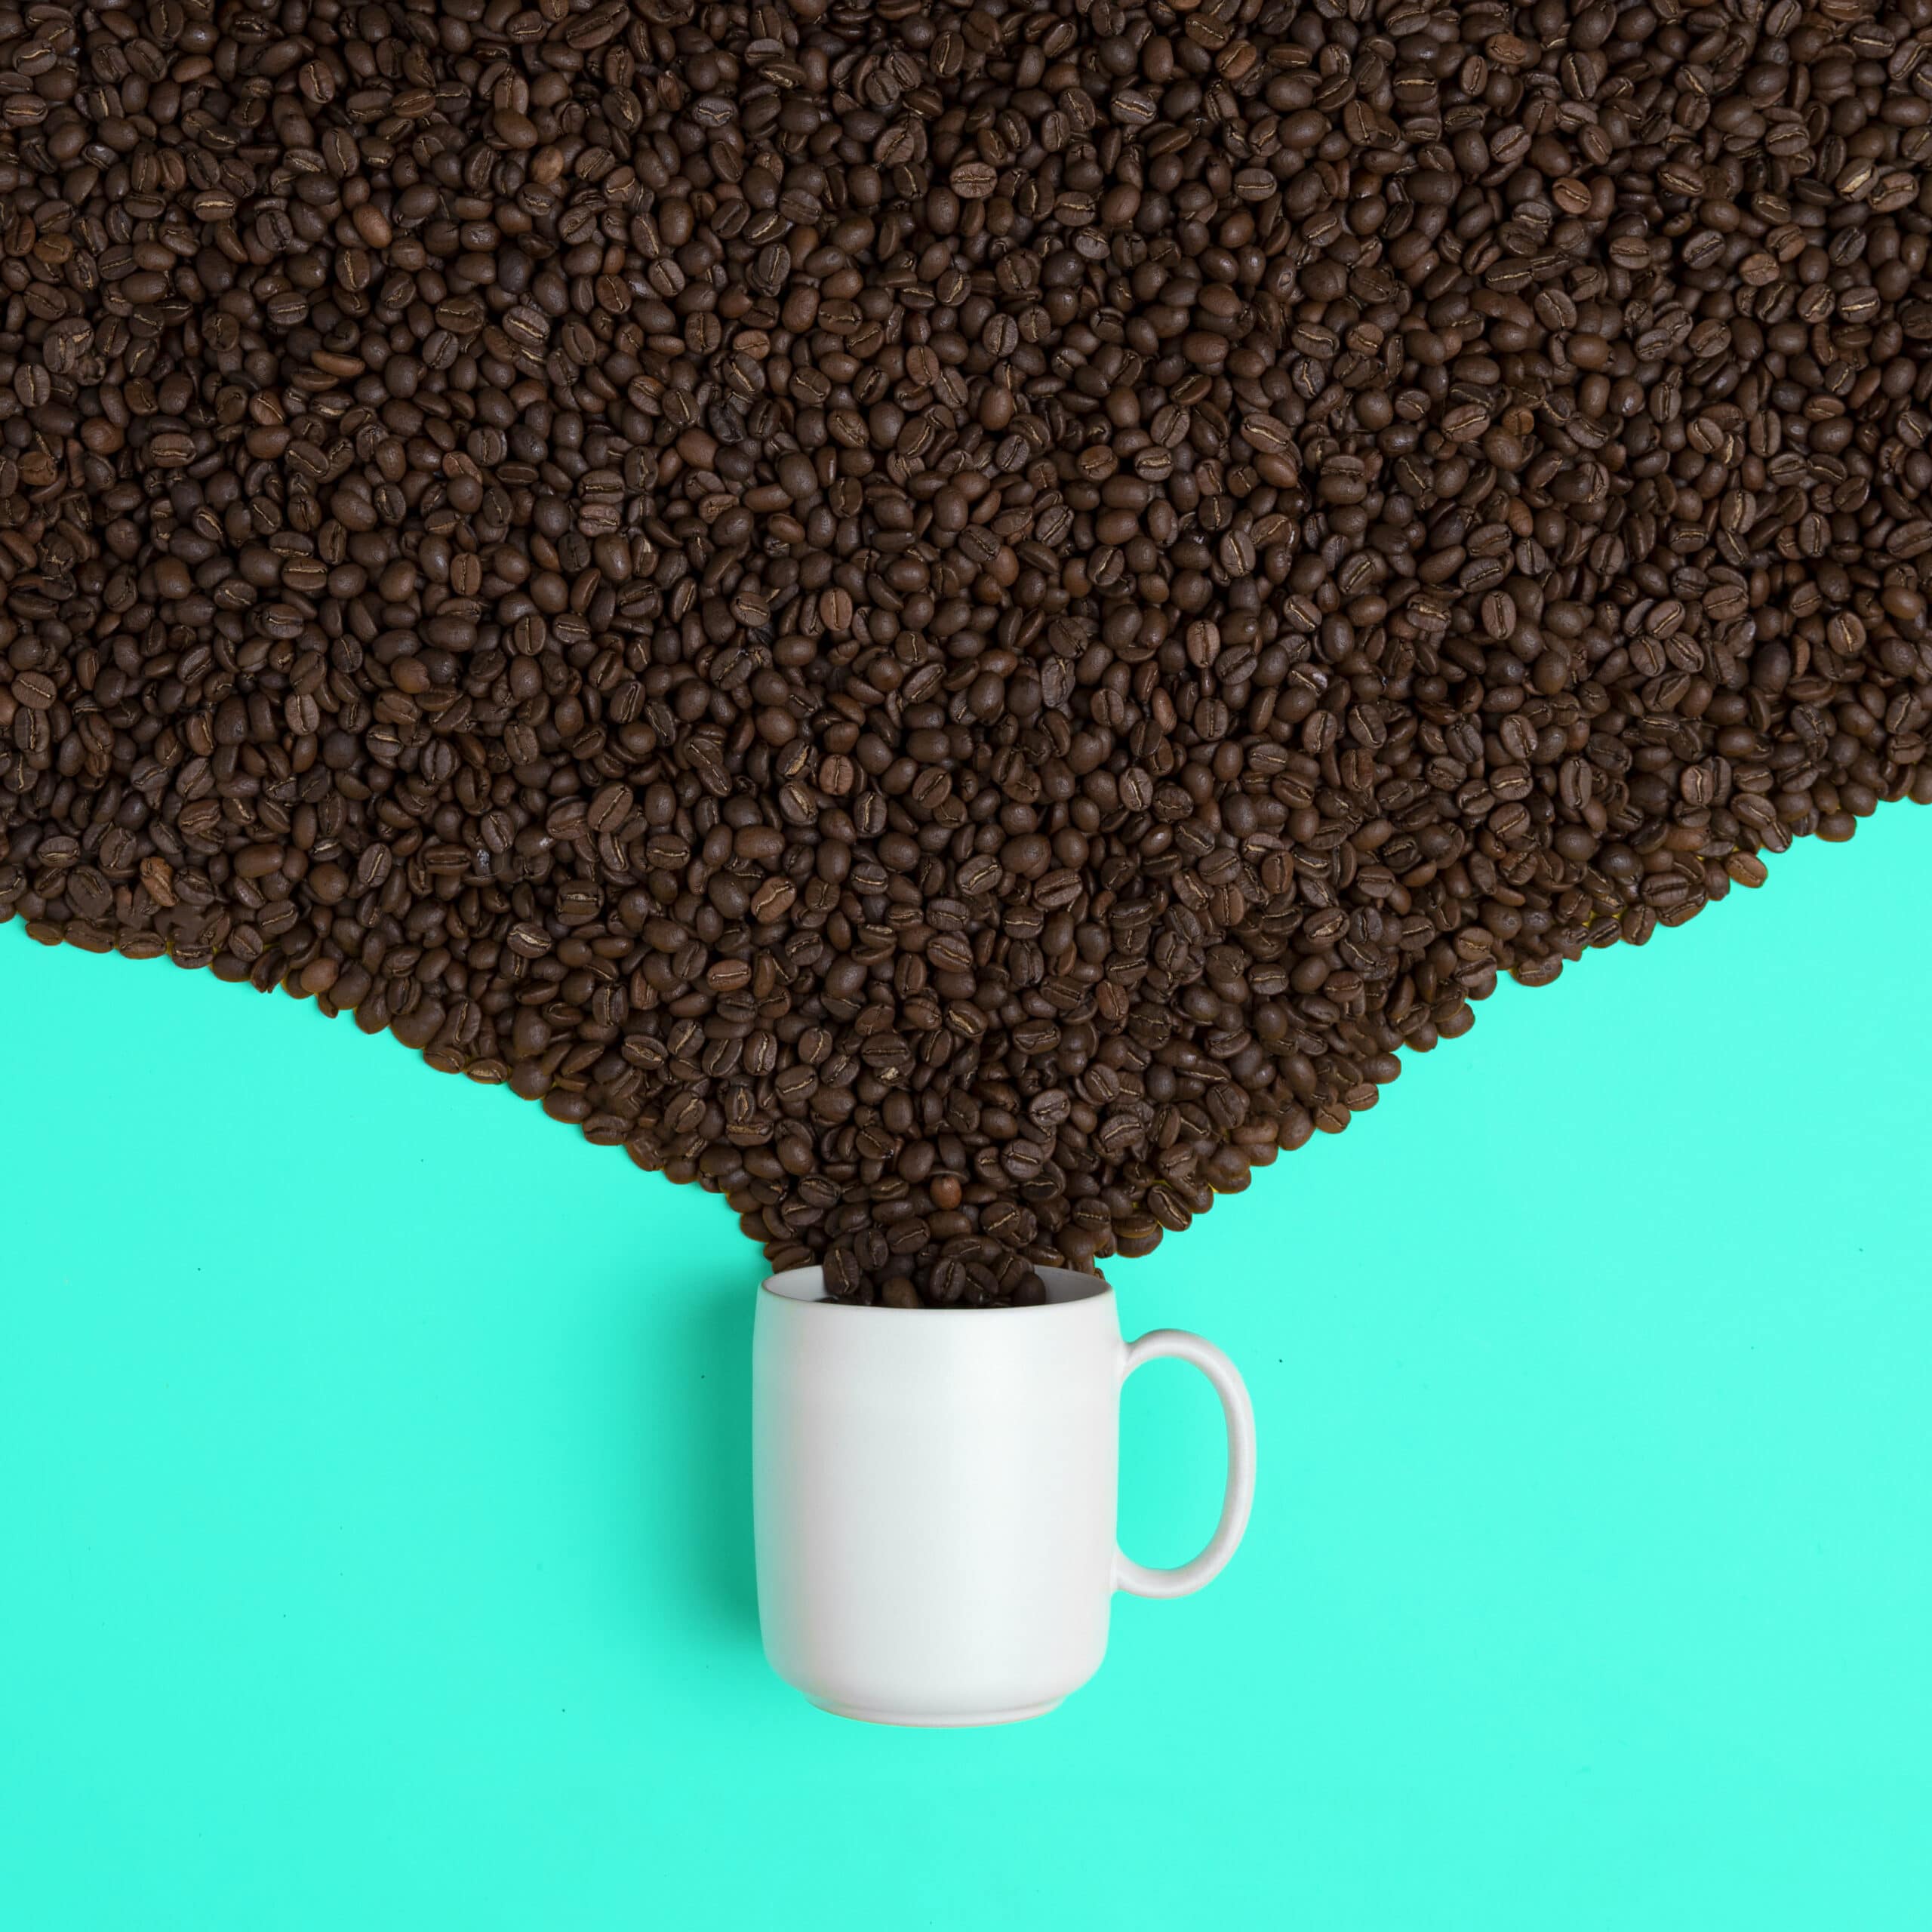 Granos de café-Incapto